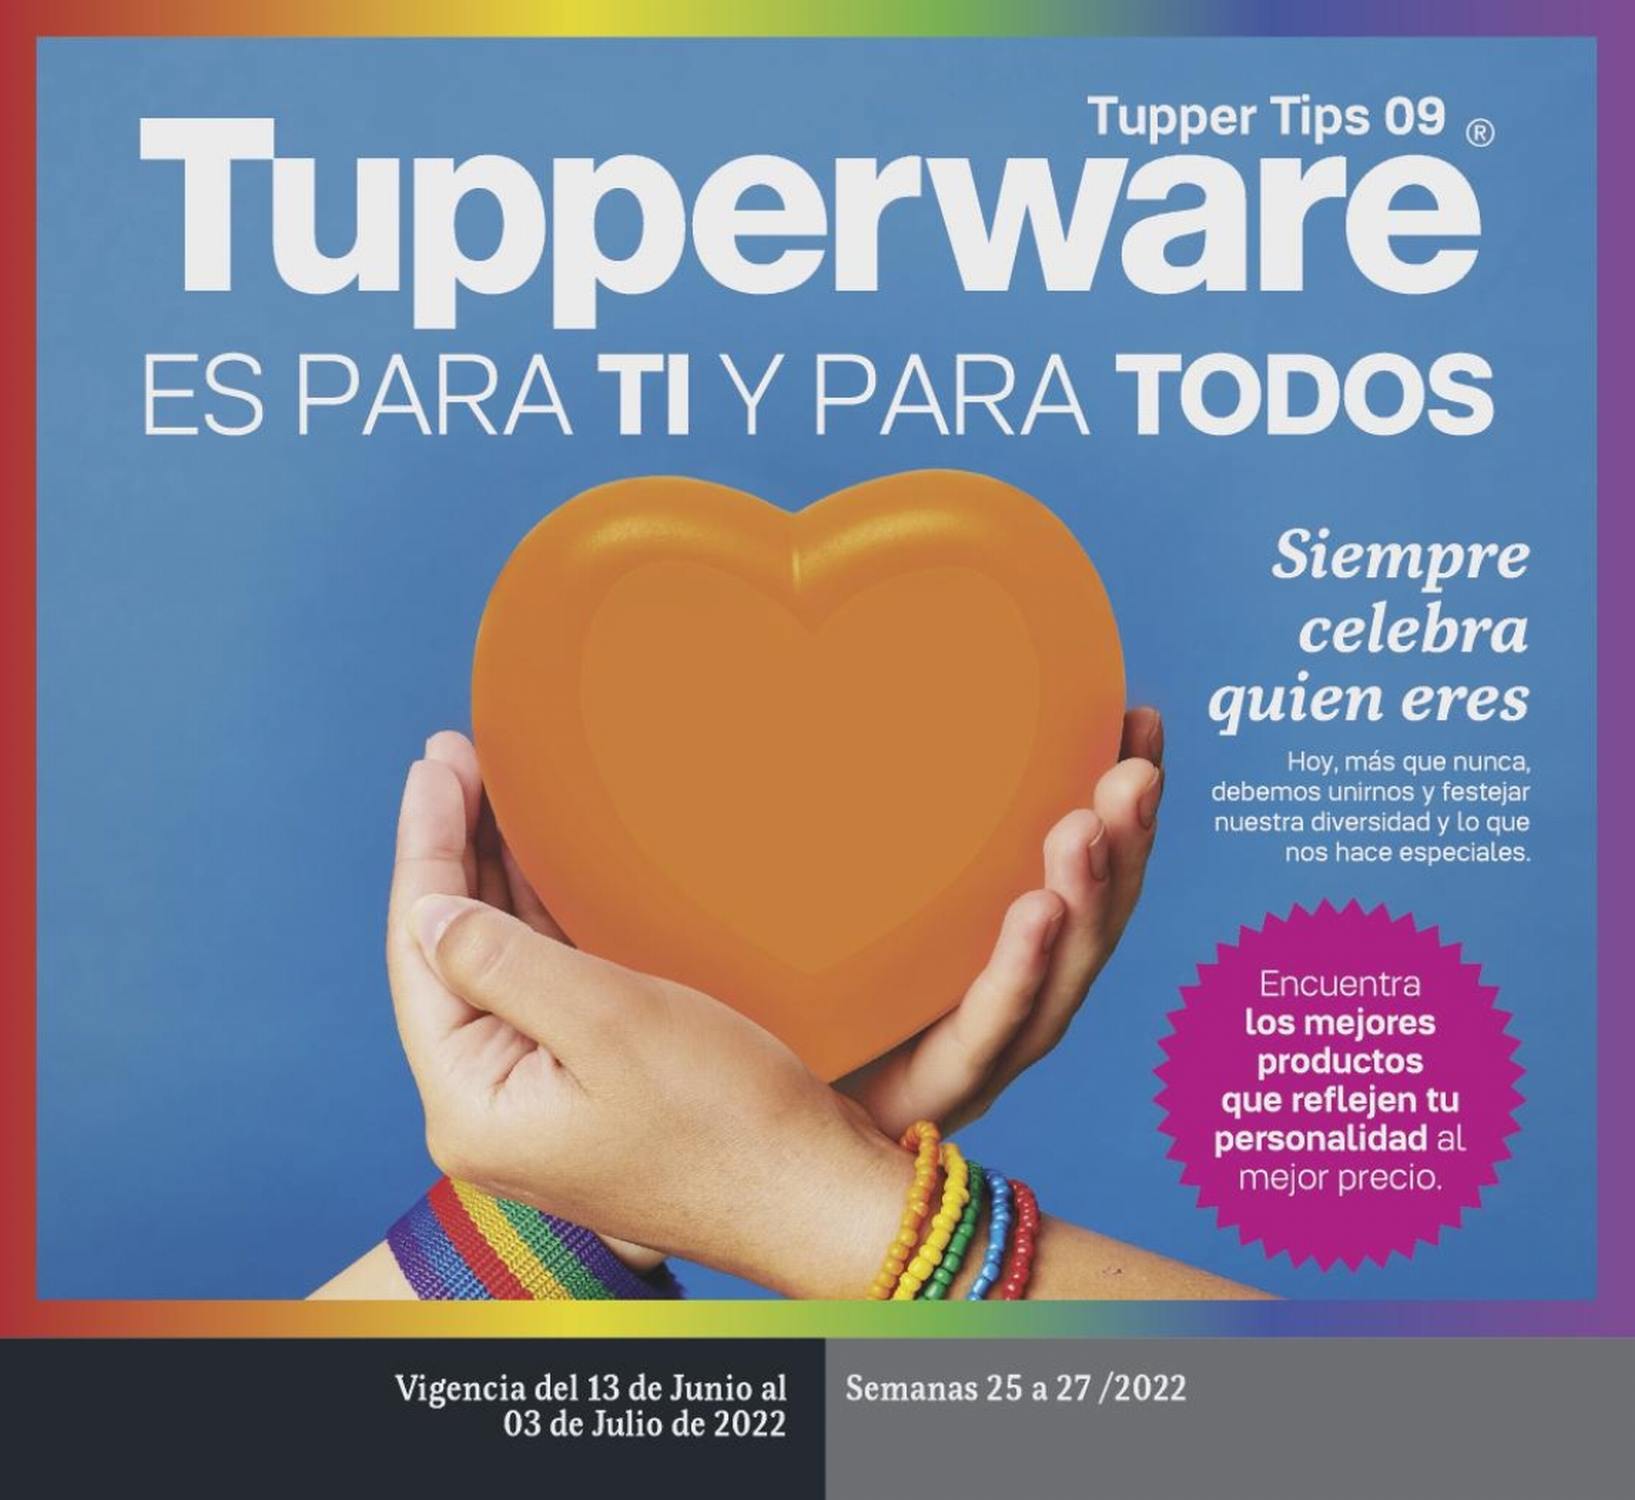 Catálogo Tupperware Tupper Tips 9 2022 México